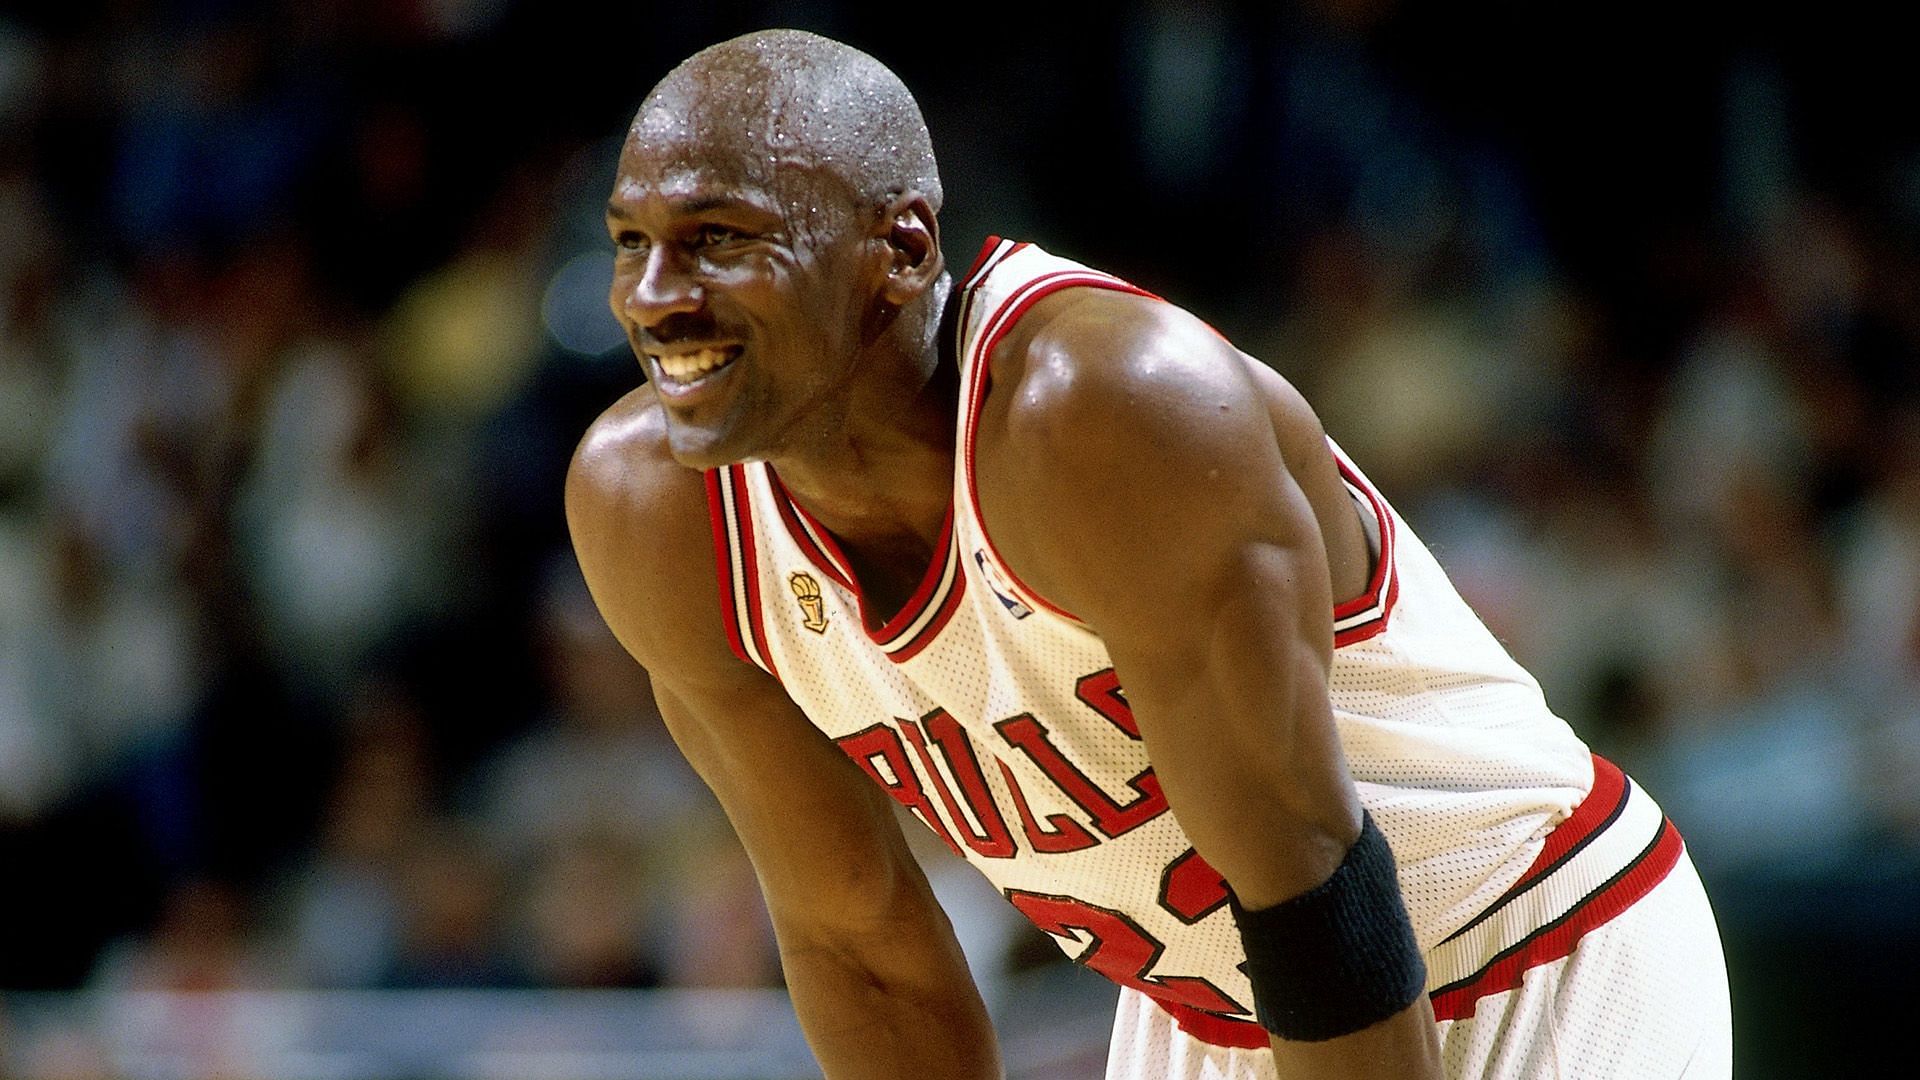 Michael Jordan for the Chicago Bulls